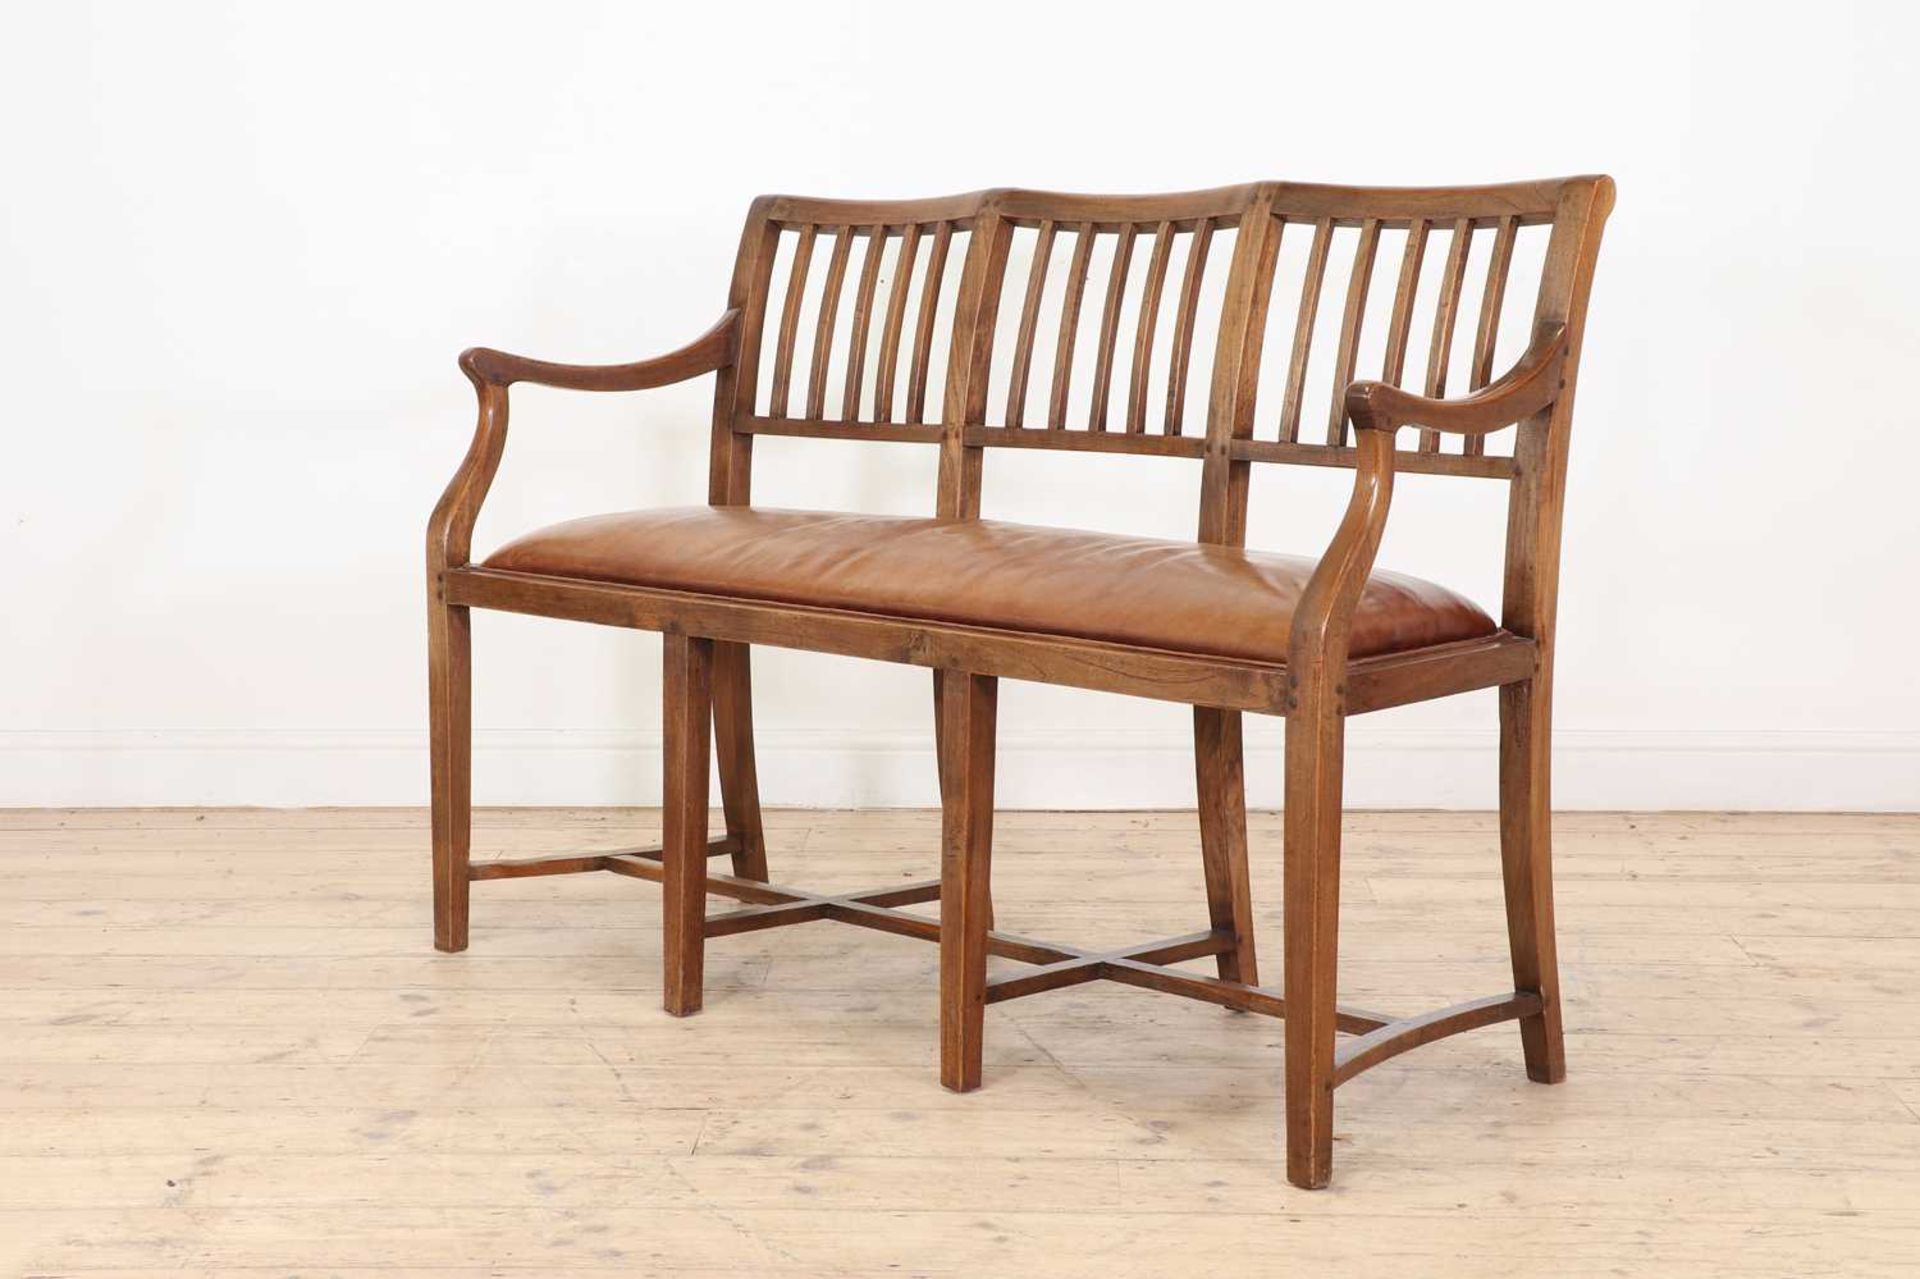 A Cotswold School oak chair-back settee,